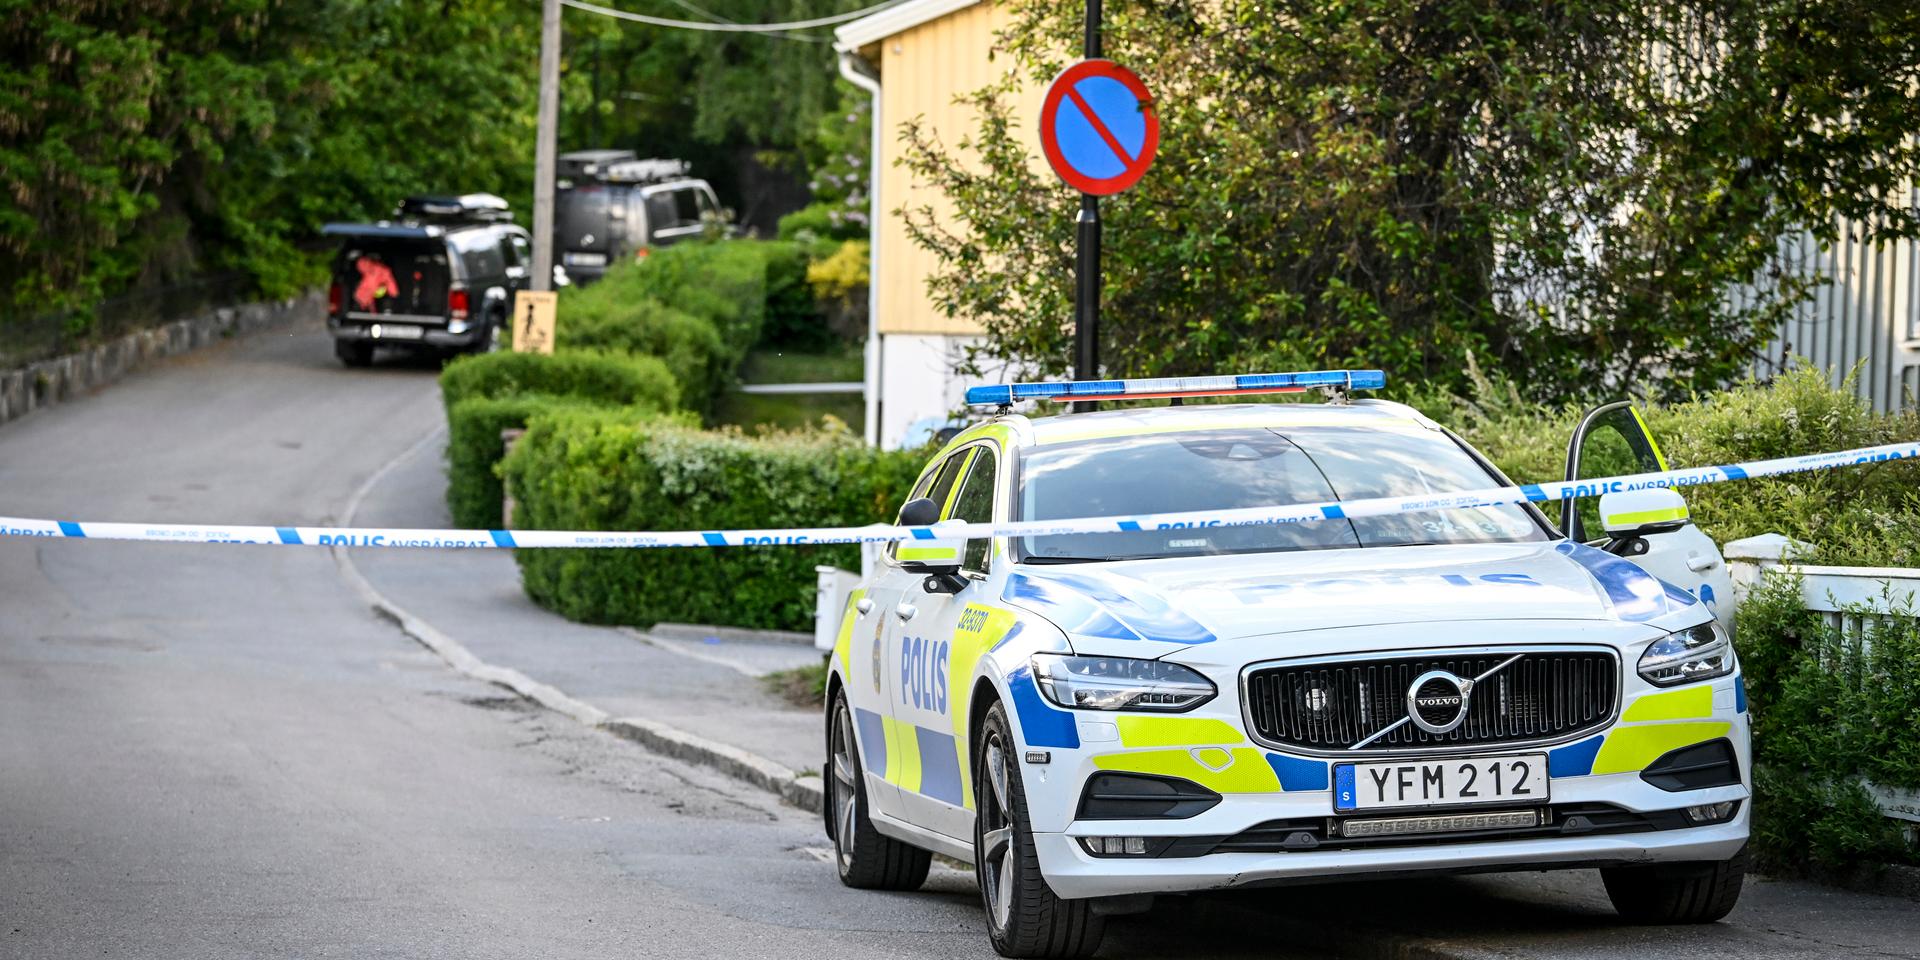 En kvinna i 40-årsåldern och ett barn i femårsåldern har avlidit efter att ha misshandlats svårt i Mälarhöjden i södra Stockholm.